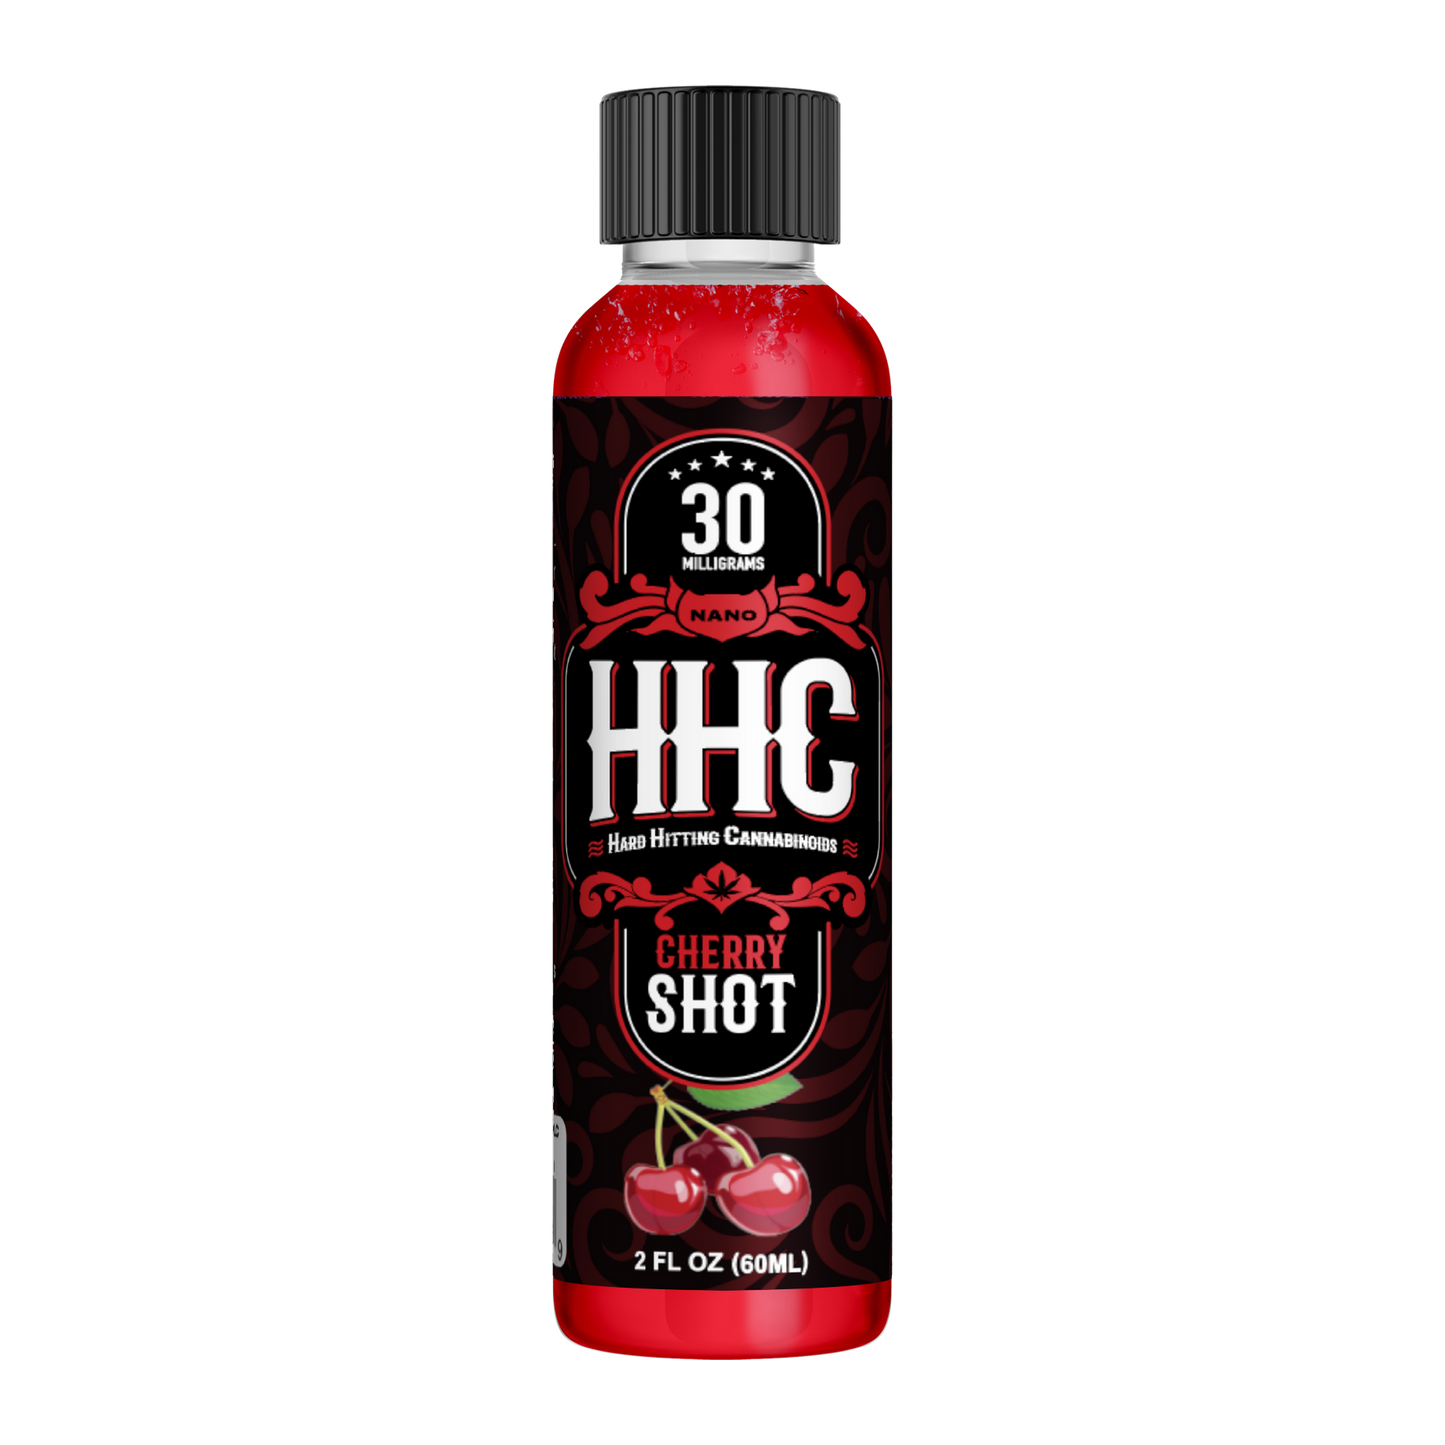 hhc cherry shot 60ml drinks